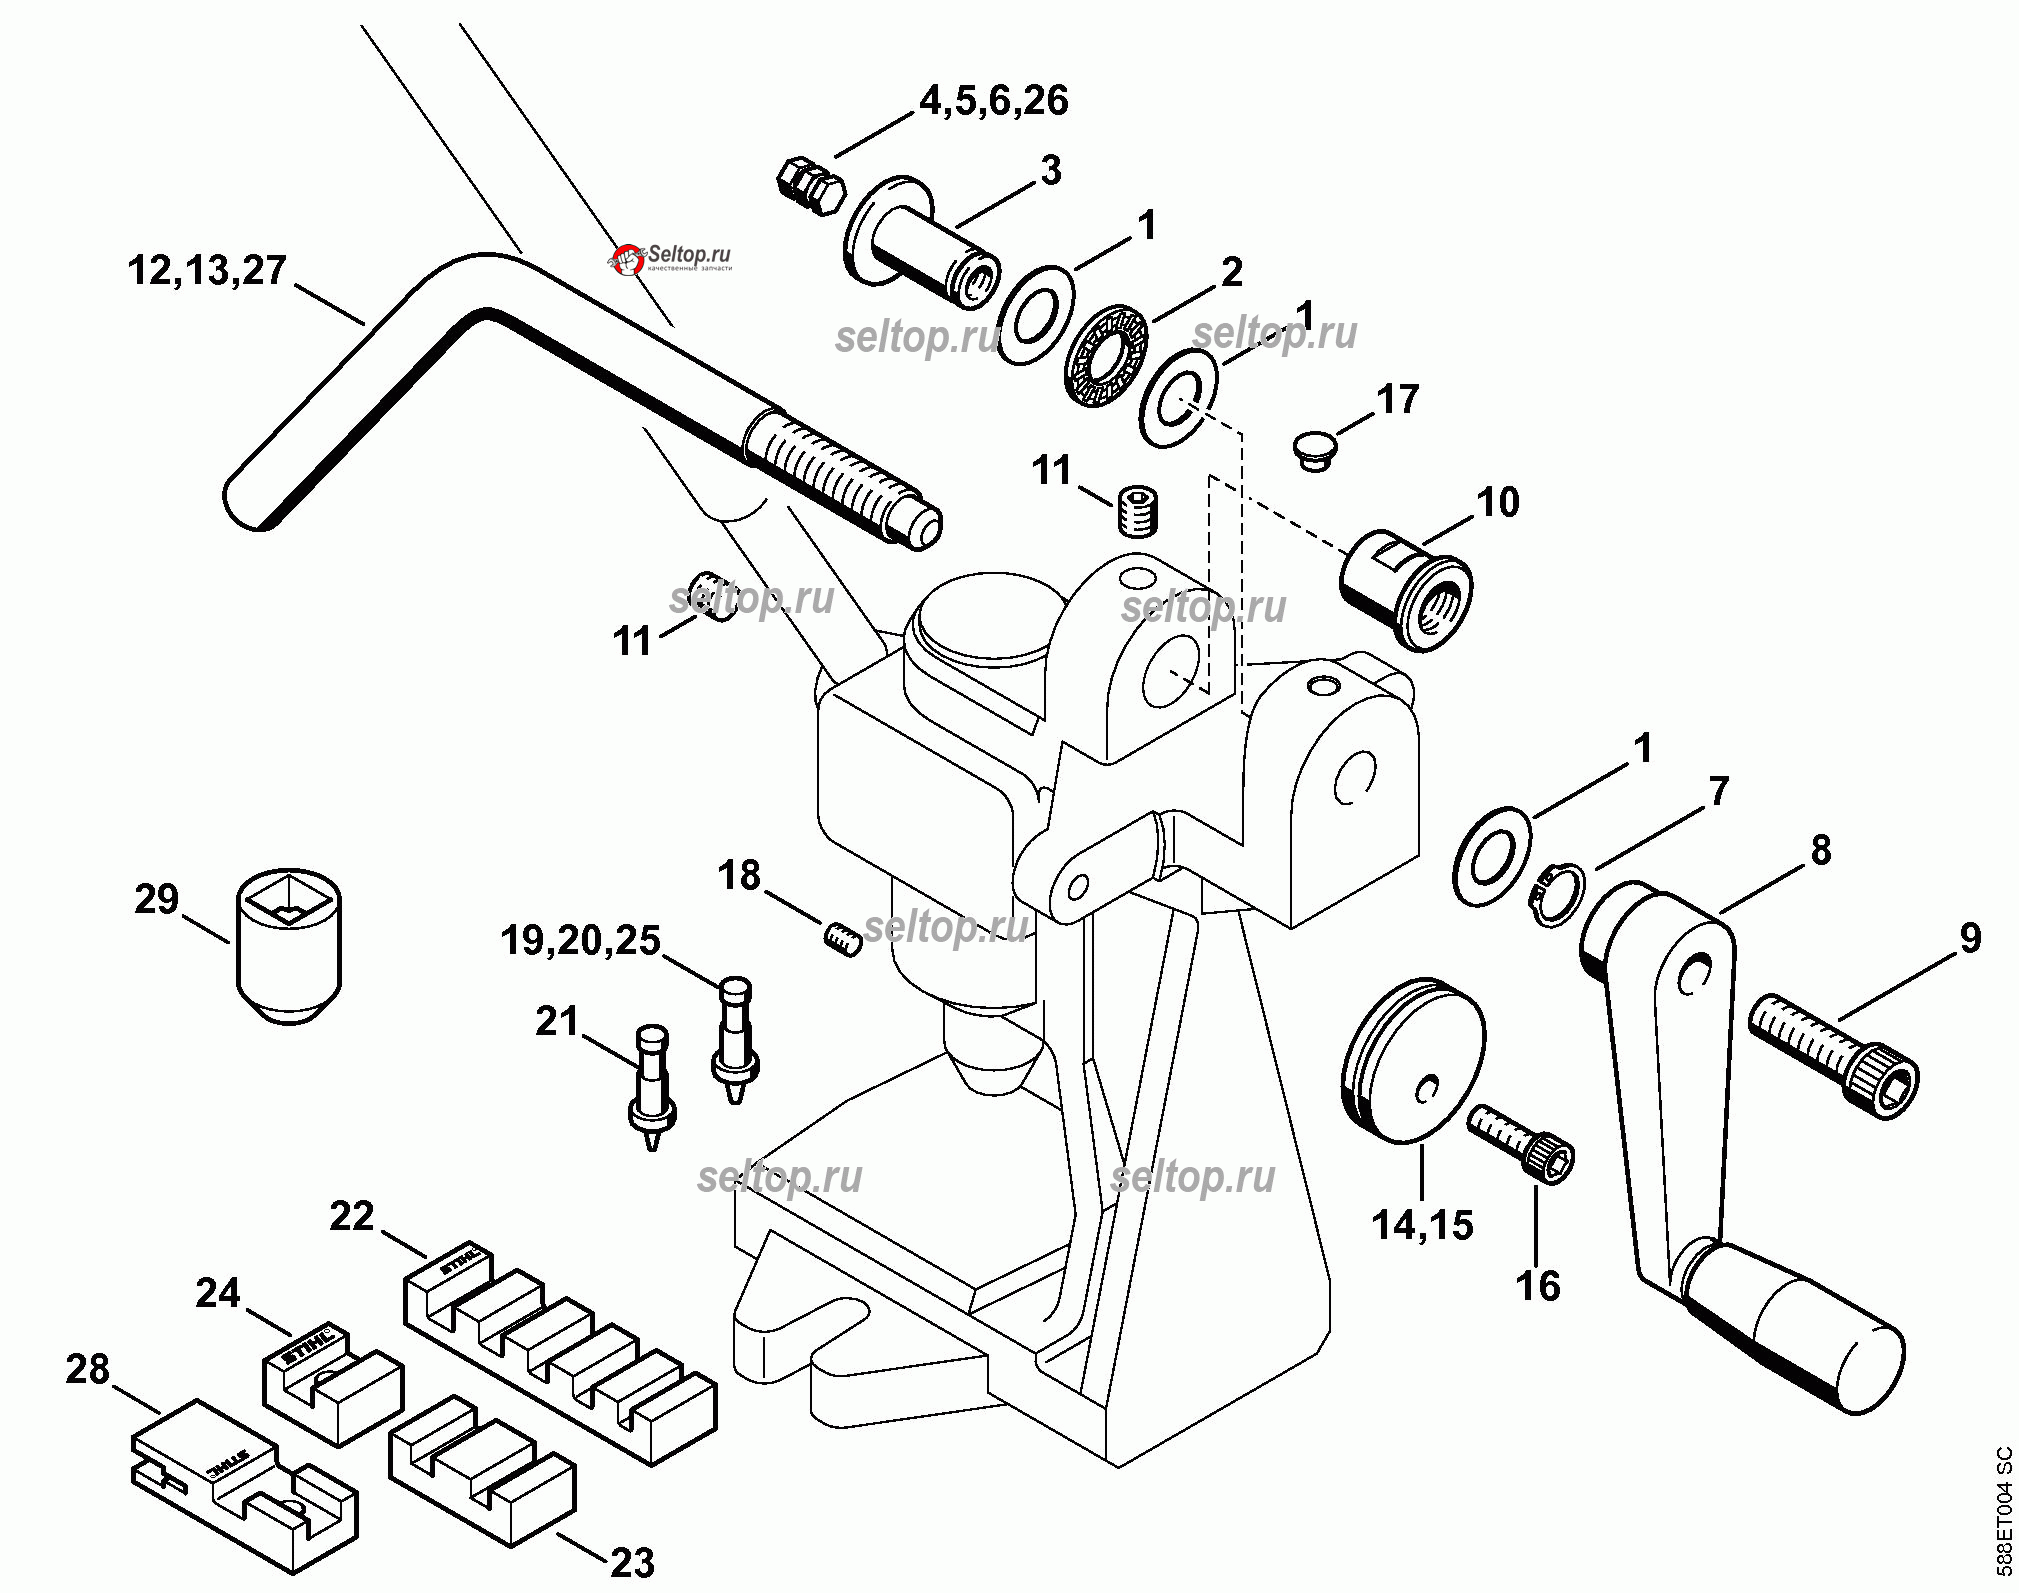 Техника заточки цепей бензопил по правильной инструкции